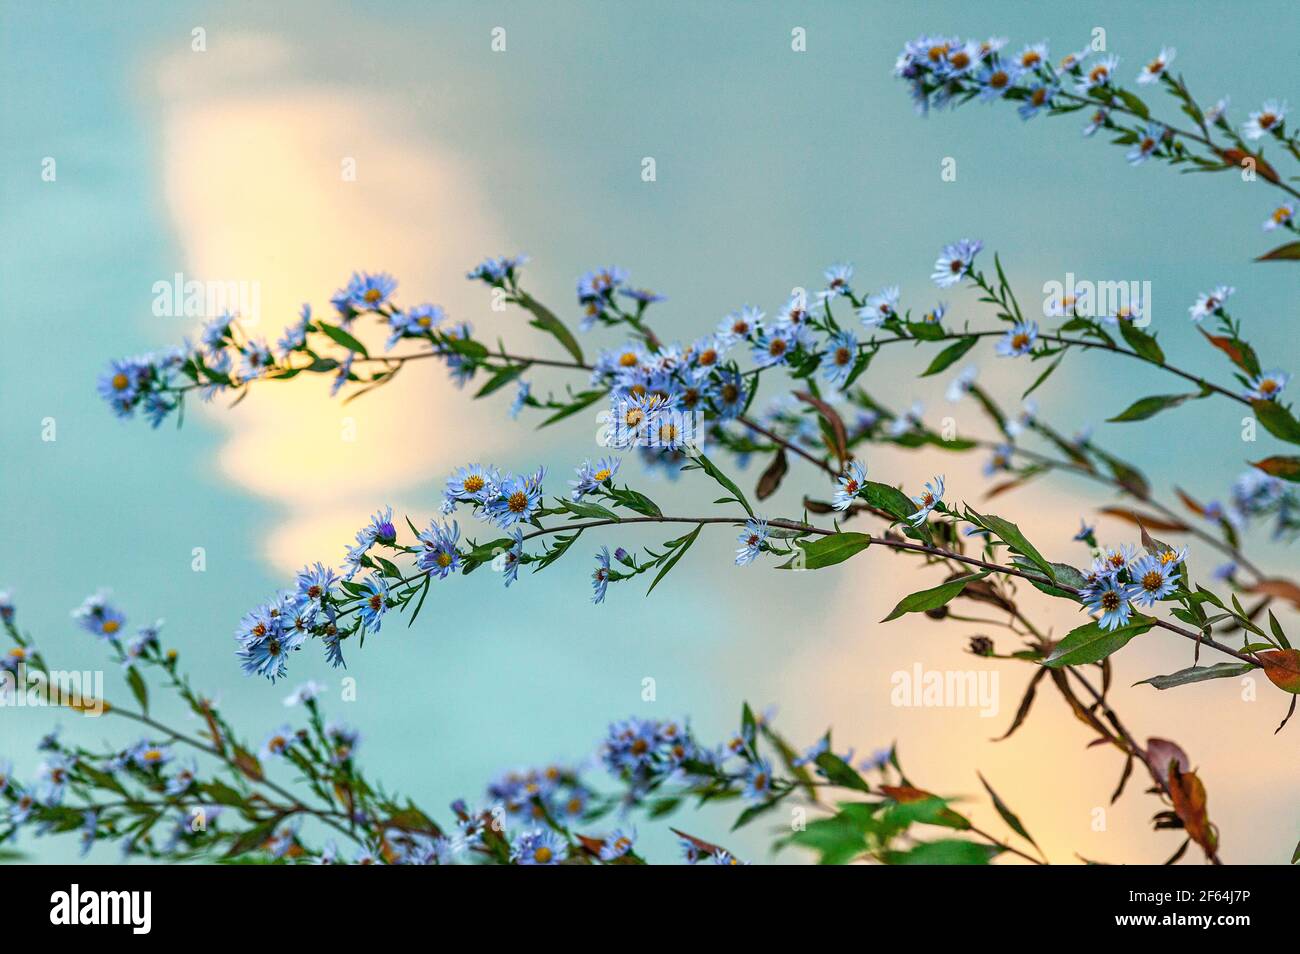 Blüte von Aster lanceolat, symphyotrichum lanceolatum (willd.) G.l., nesom, hellblau mit verschwommenem Hintergrund. Abruzzen, Italien, Europa Stockfoto